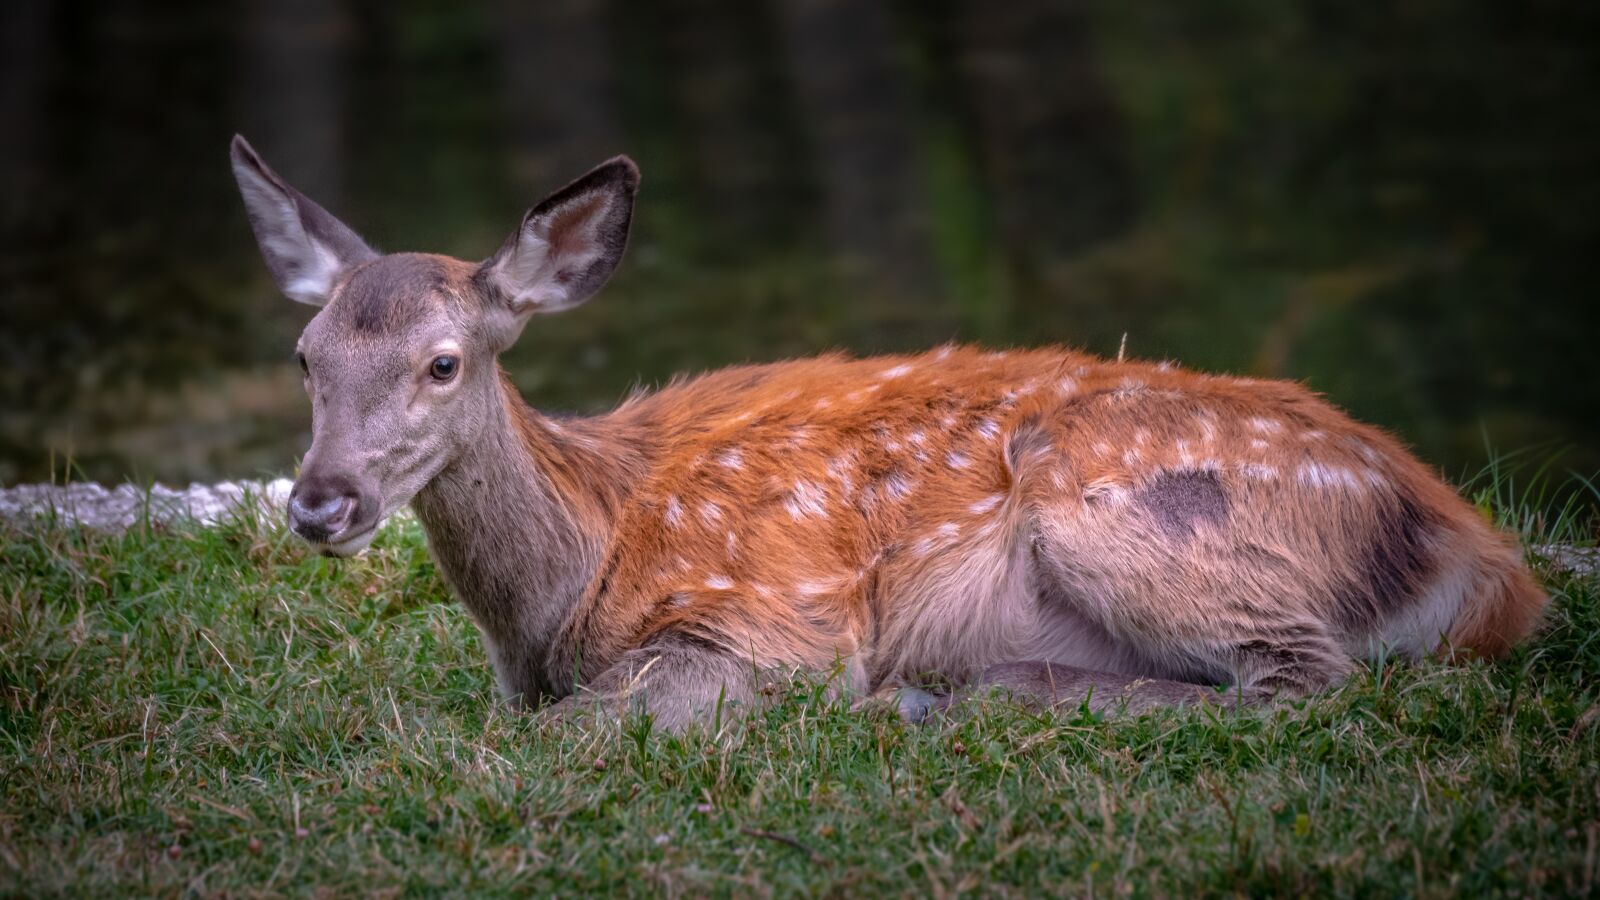 Nikon D750 sample photo. Deer, animal, nature photography